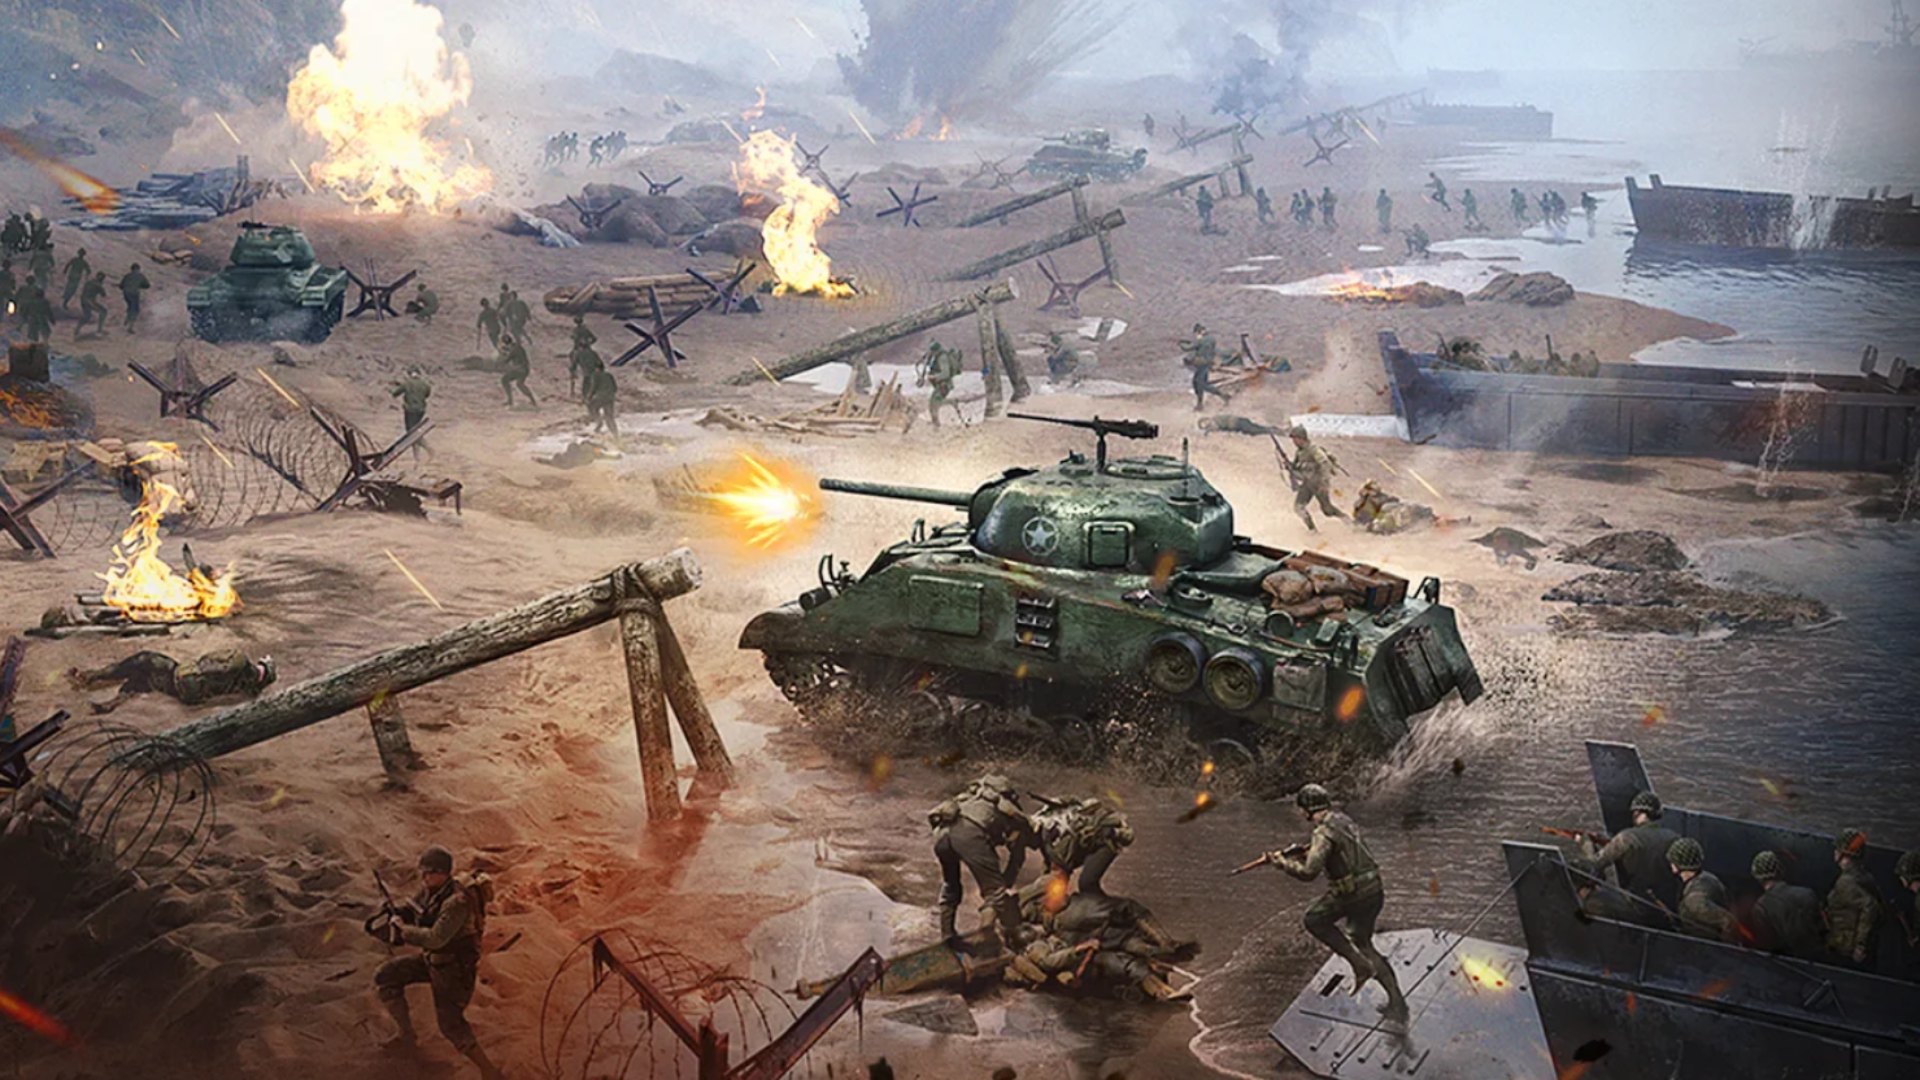 بهترین بازی های جنگی موبایل: Warpath. تصویر یک میدان نبرد را نشان می دهد که با تانک ها و سربازان پوشیده شده است